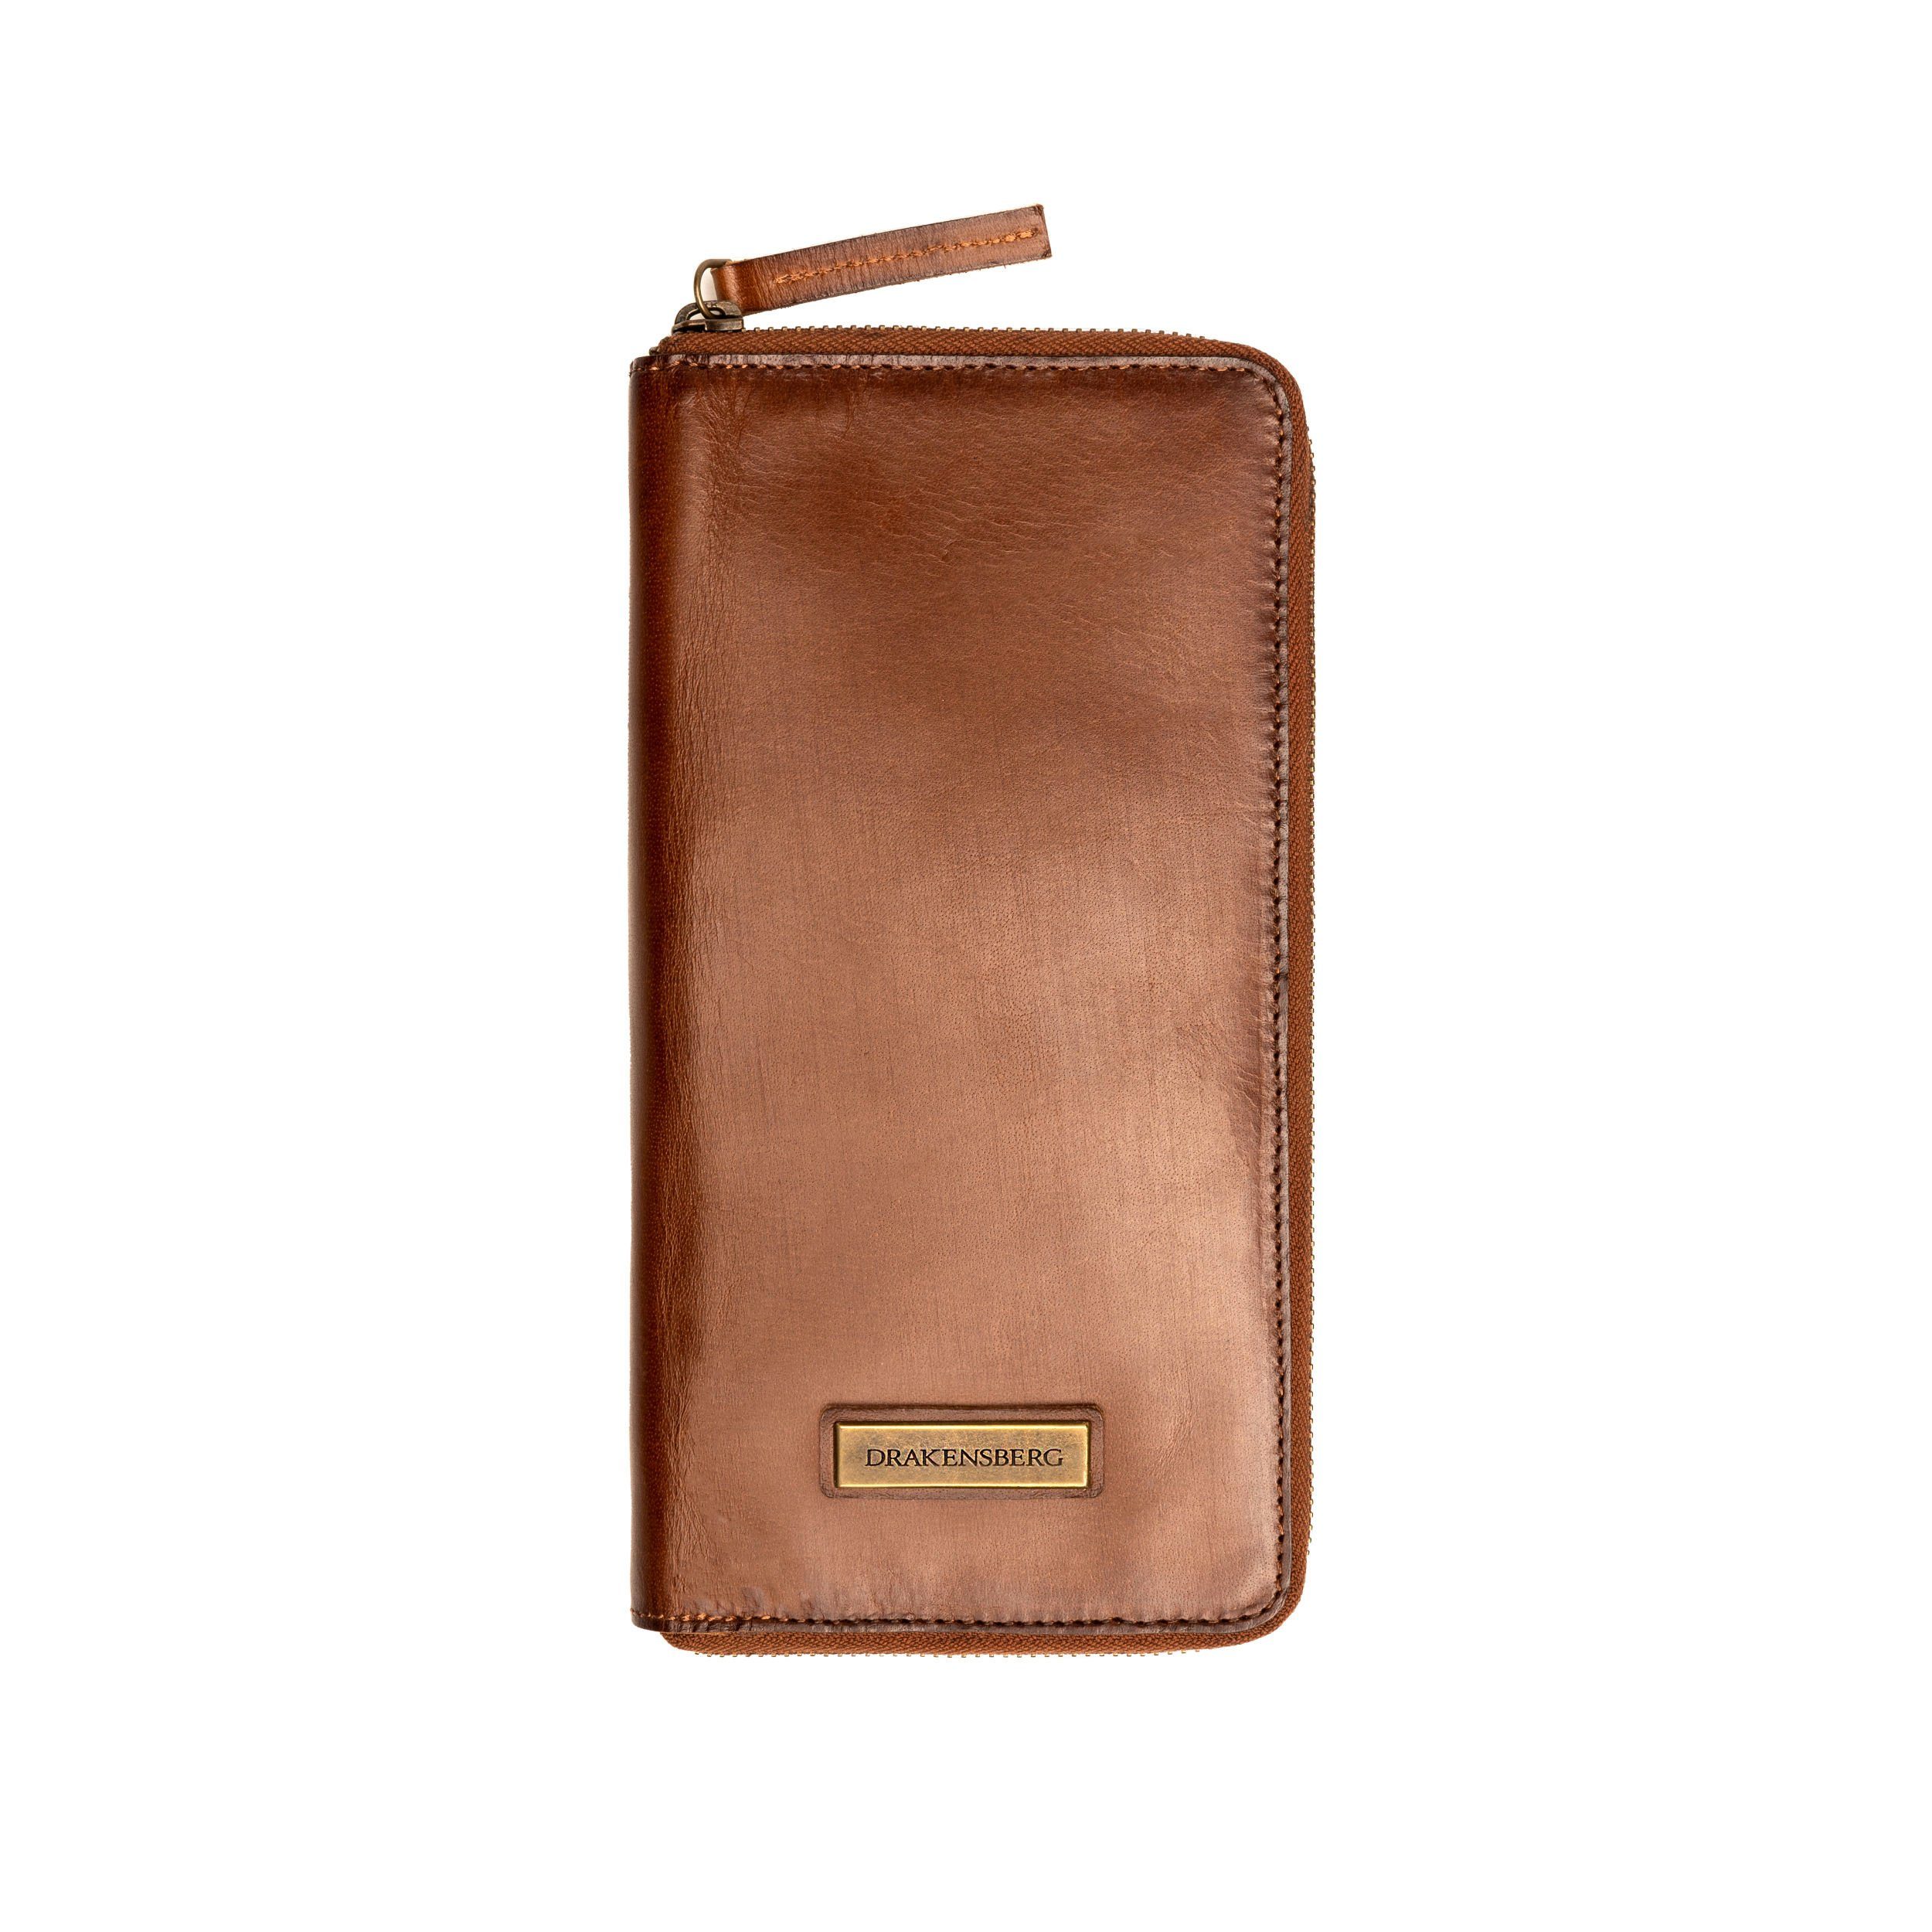 DRAKENSBERG Brieftasche Reisegeldbeutel mit Reisebrieftasche Leder große Vintage-Braun, »Travis« Reise-Organizer und RFID Schutz